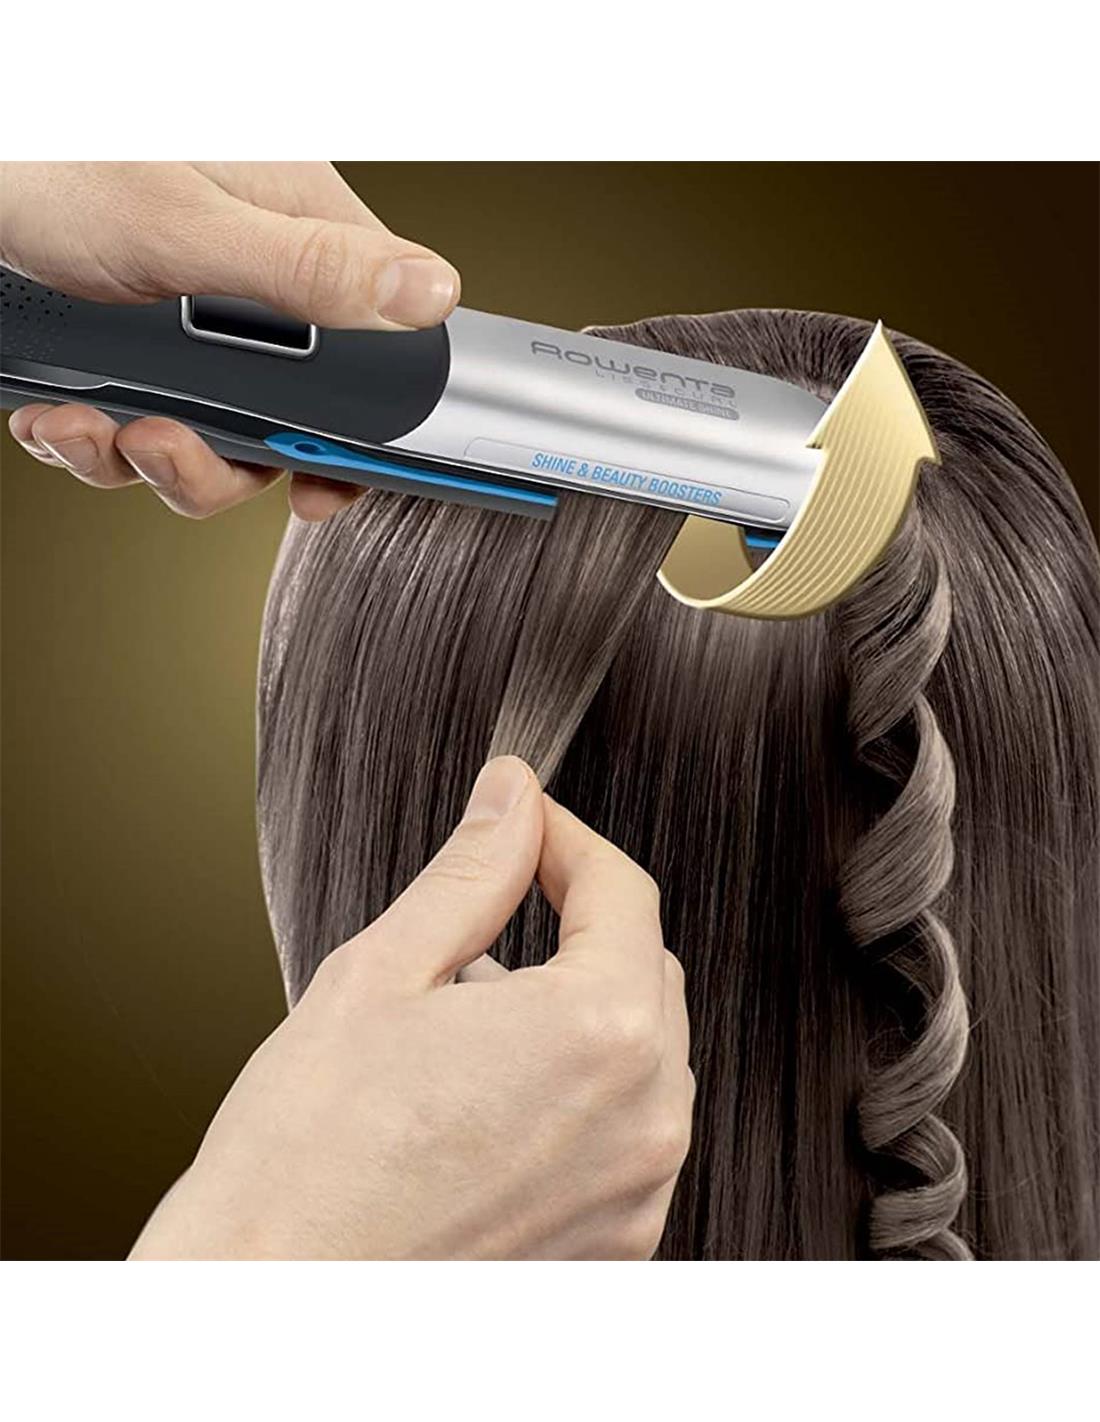 Plancha de pelo Rowenta con tecnología infrarrojos - Marrón y Blanco